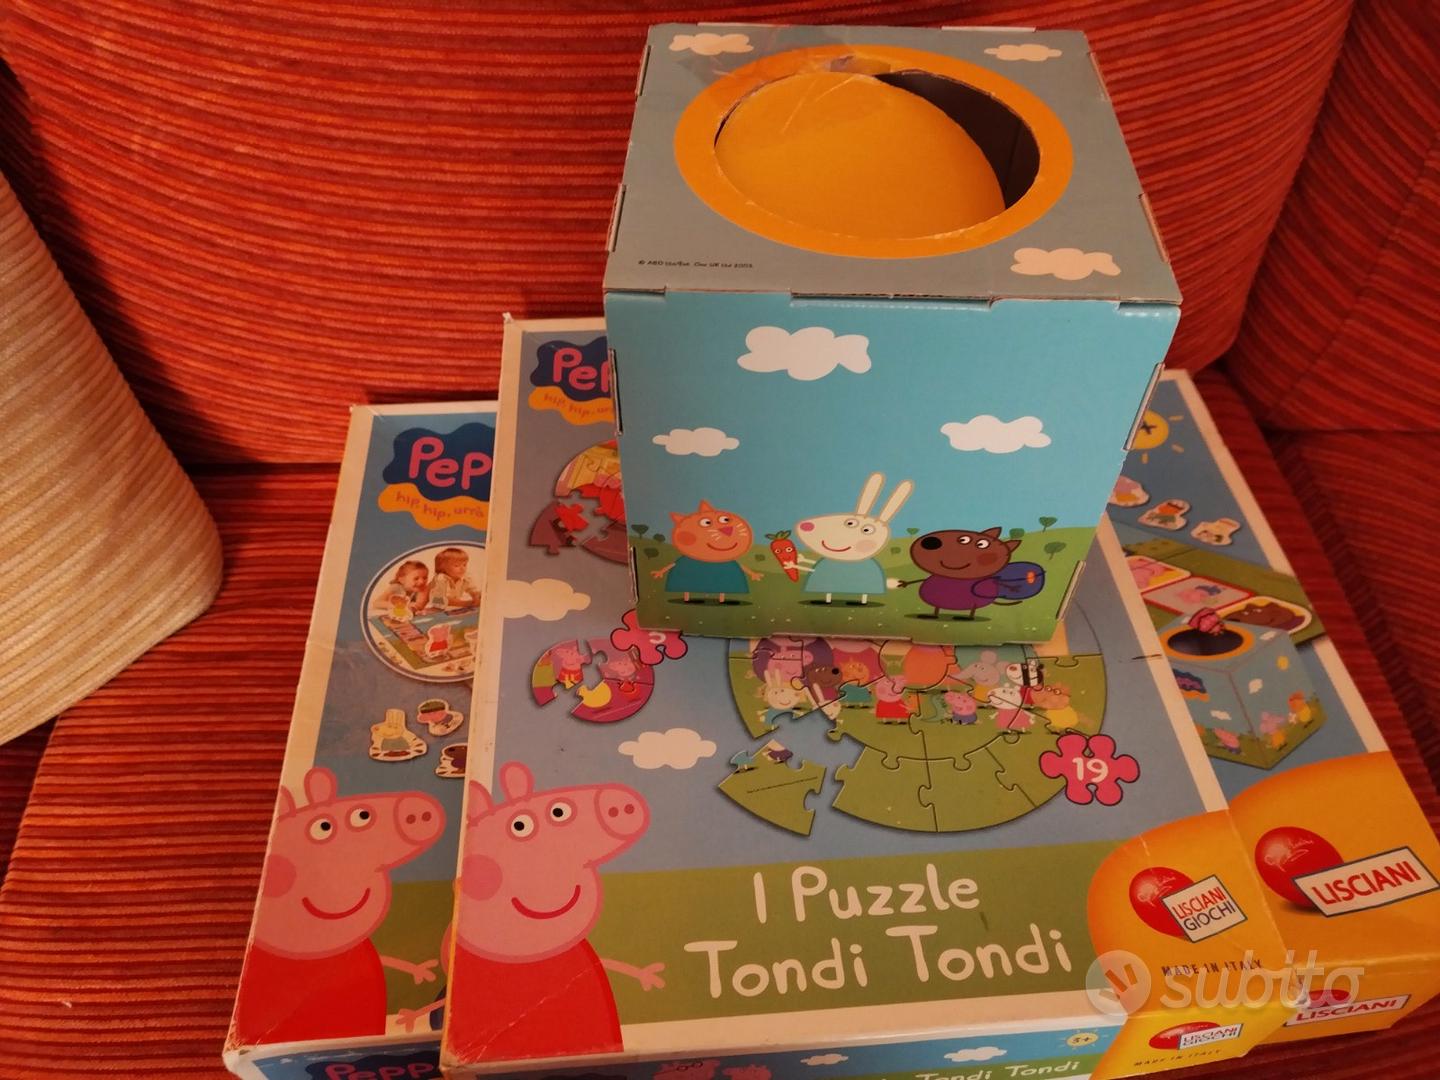 Giochi da tavolo Peppa Pig - Tutto per i bambini In vendita a Trento